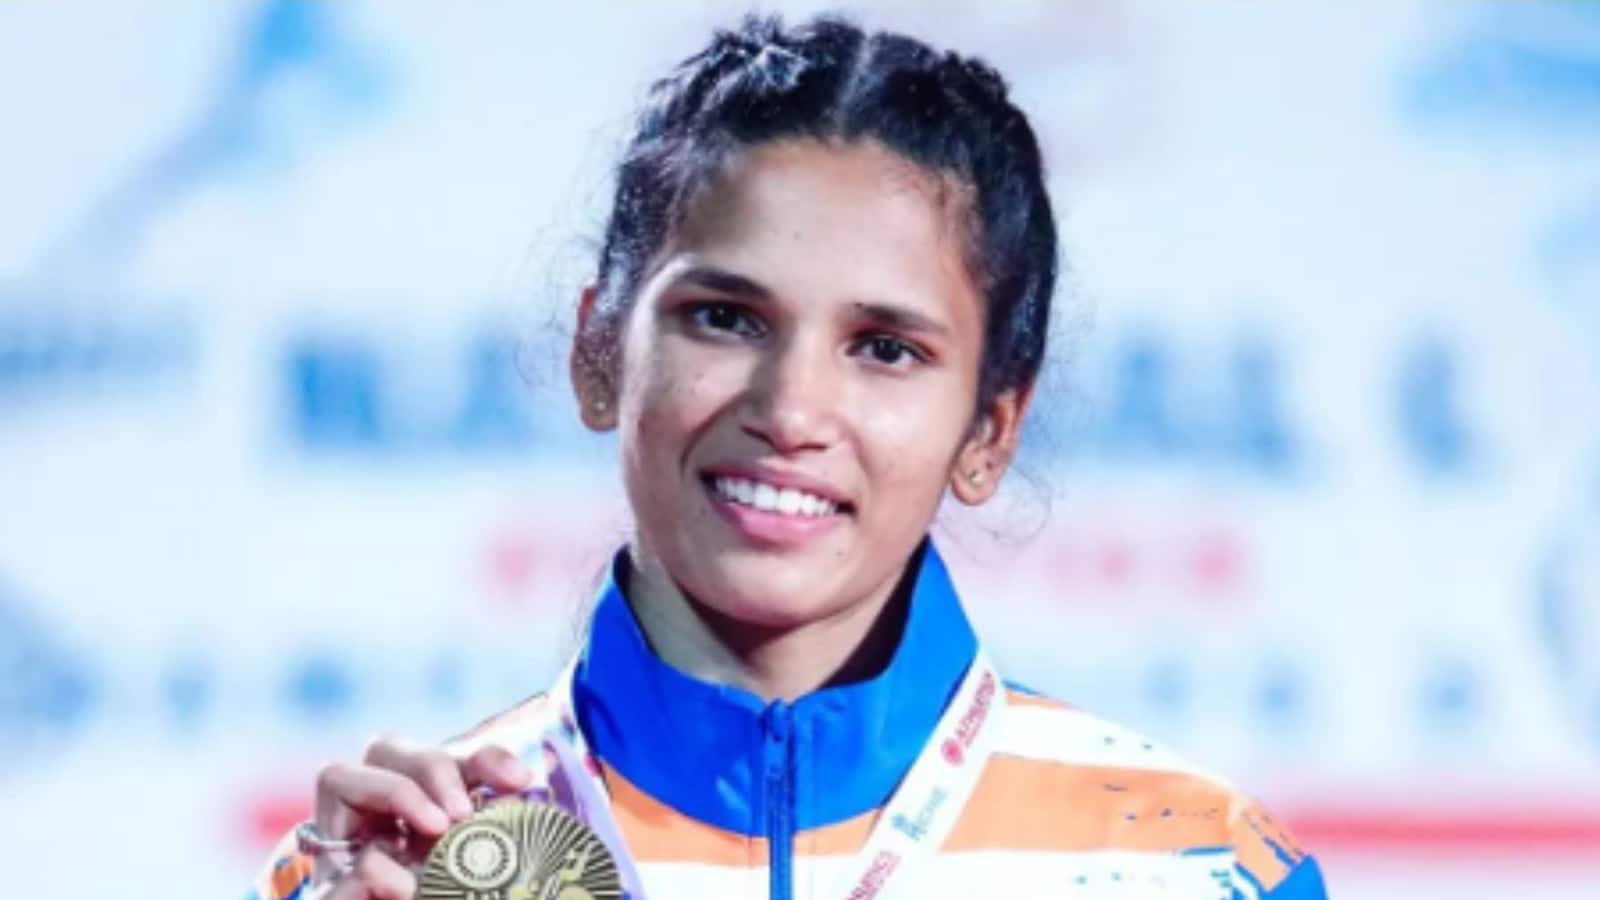 A Joy to See Jyothi Yarraji Rise as an Athlete: Nita Ambani